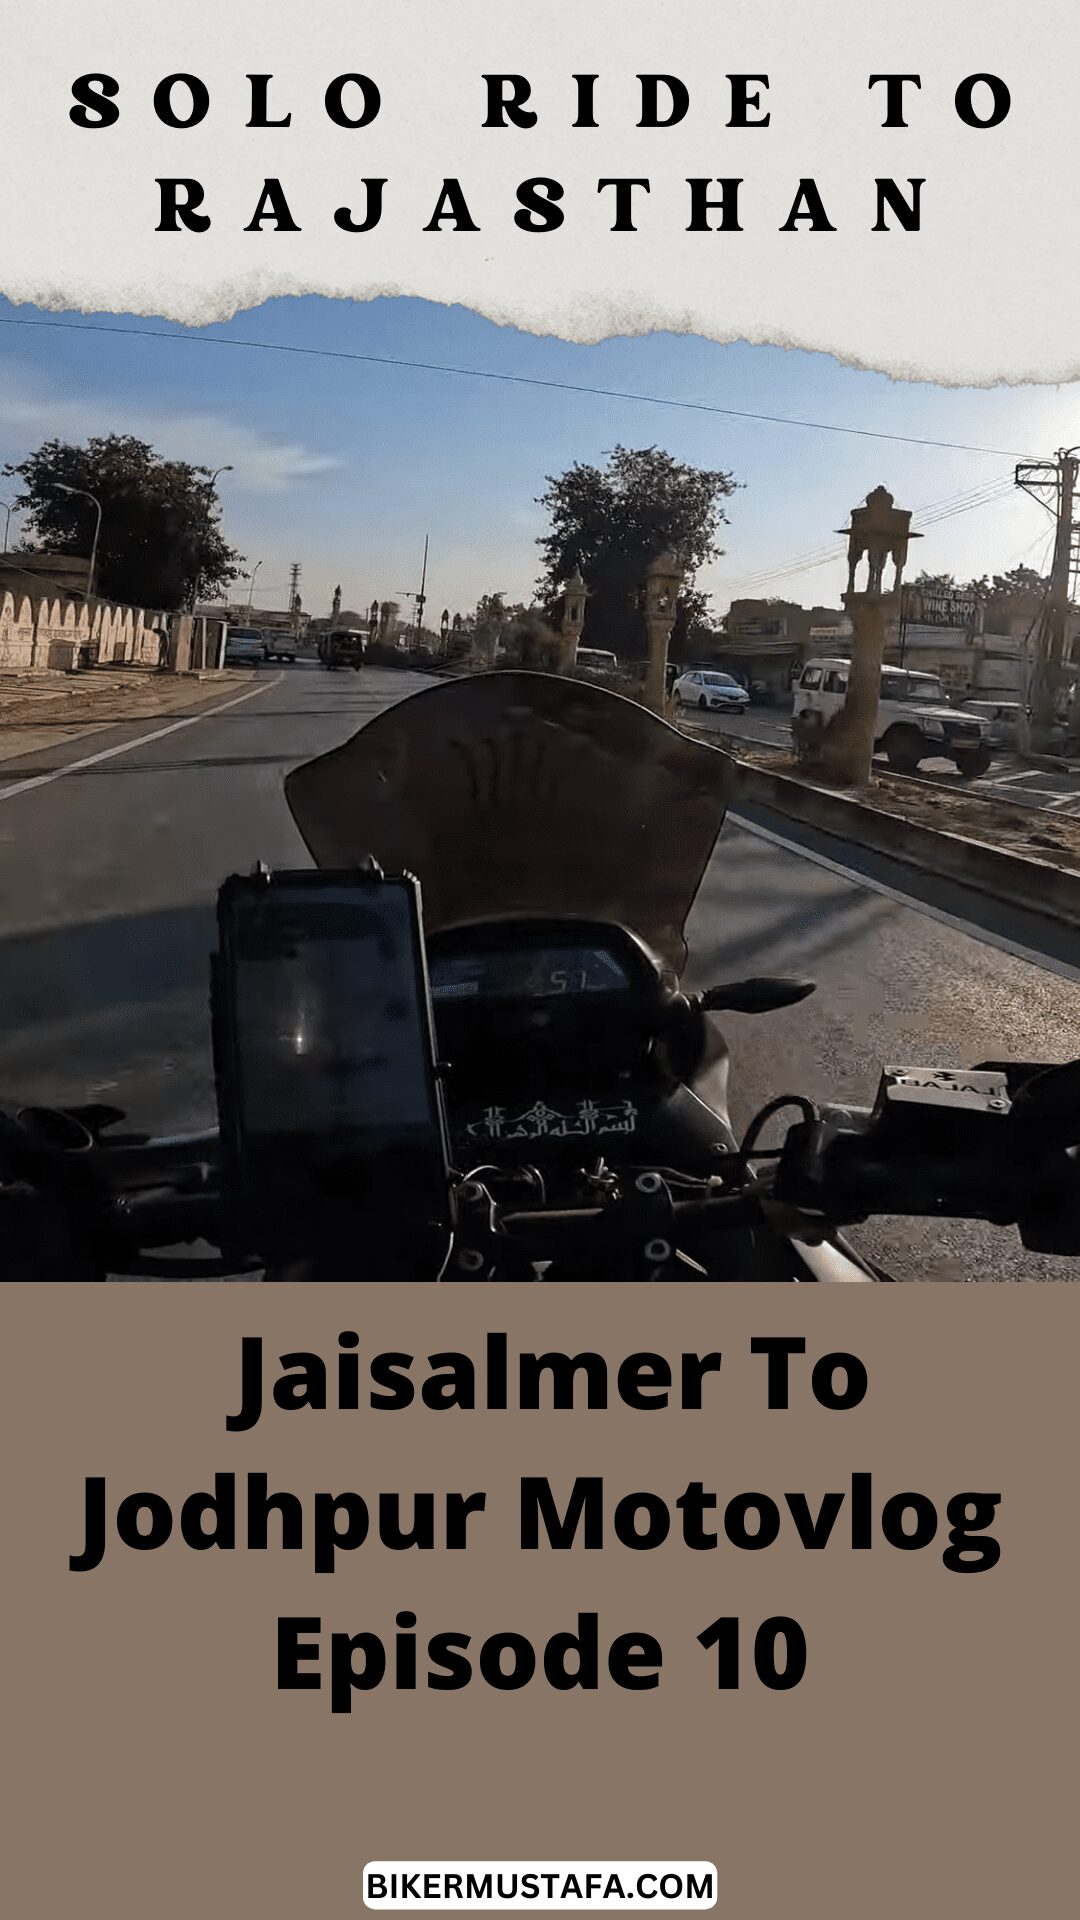 Rajasthan Ride Jaisalmer To Jodhpur Motovlog Episode 10